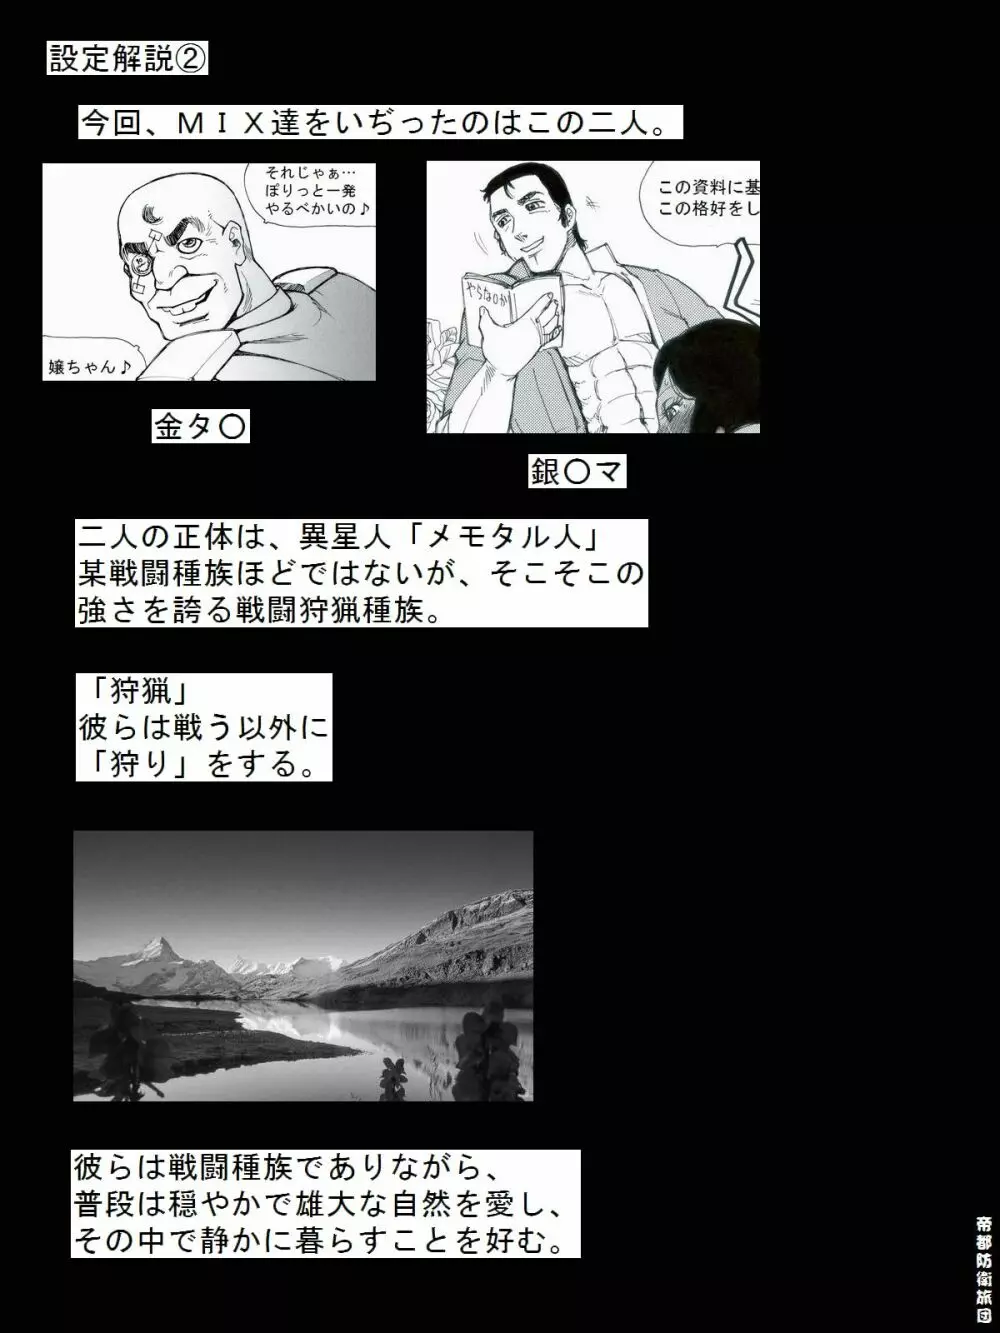 [帝都防衛旅団] RTKBOOK 9-3 「M○Xいぢり(3) 『PANPAN-MAN』」 - page26